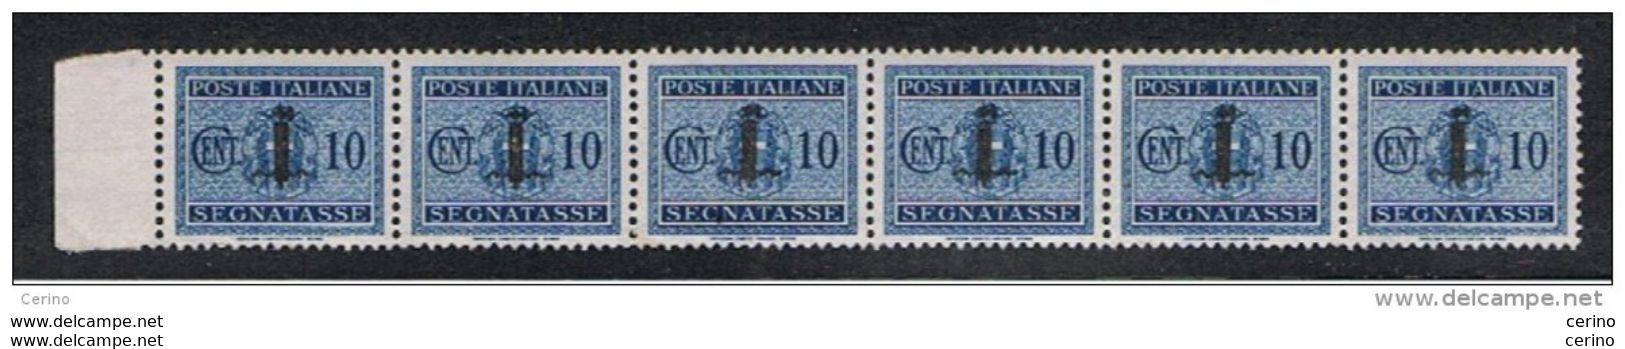 R.S.I.:  1944  TASSE  SOPRASTAMPATI  -  10 C. AZZURRO  STRISCIA  6  N. -  SASS. 61 - Segnatasse